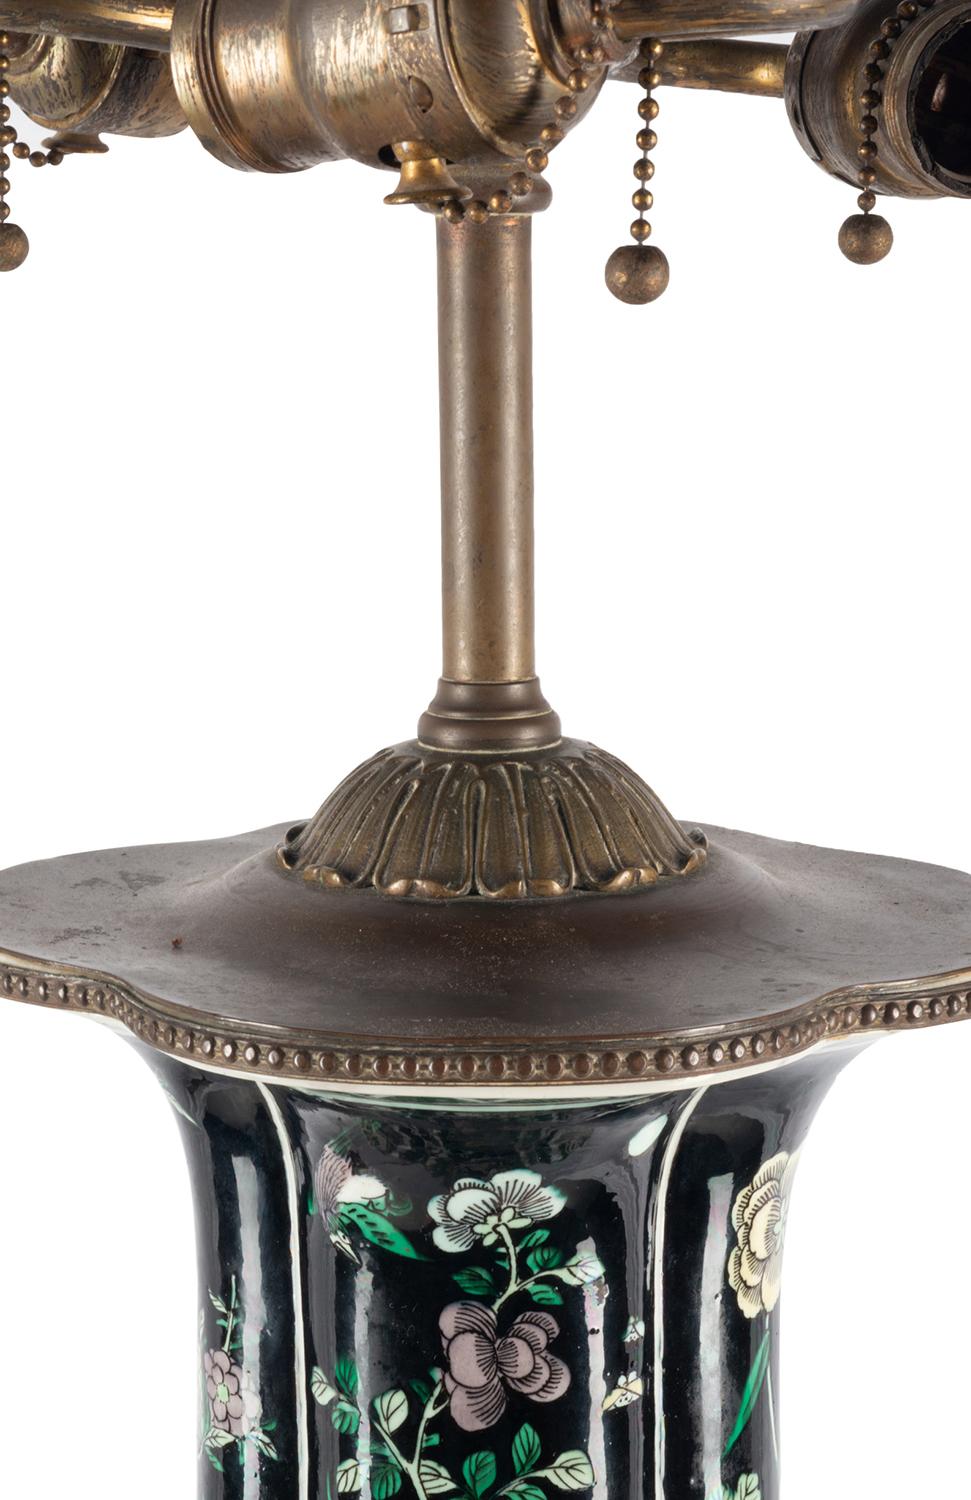 Un vase / lampe de très bonne qualité de la famille noire chinoise du 19ème siècle. Elle présente de magnifiques fleurs de prunus et des chrysanthèmes avec des oiseaux parmi eux, le tout reposant sur une base en bronze doré percé.